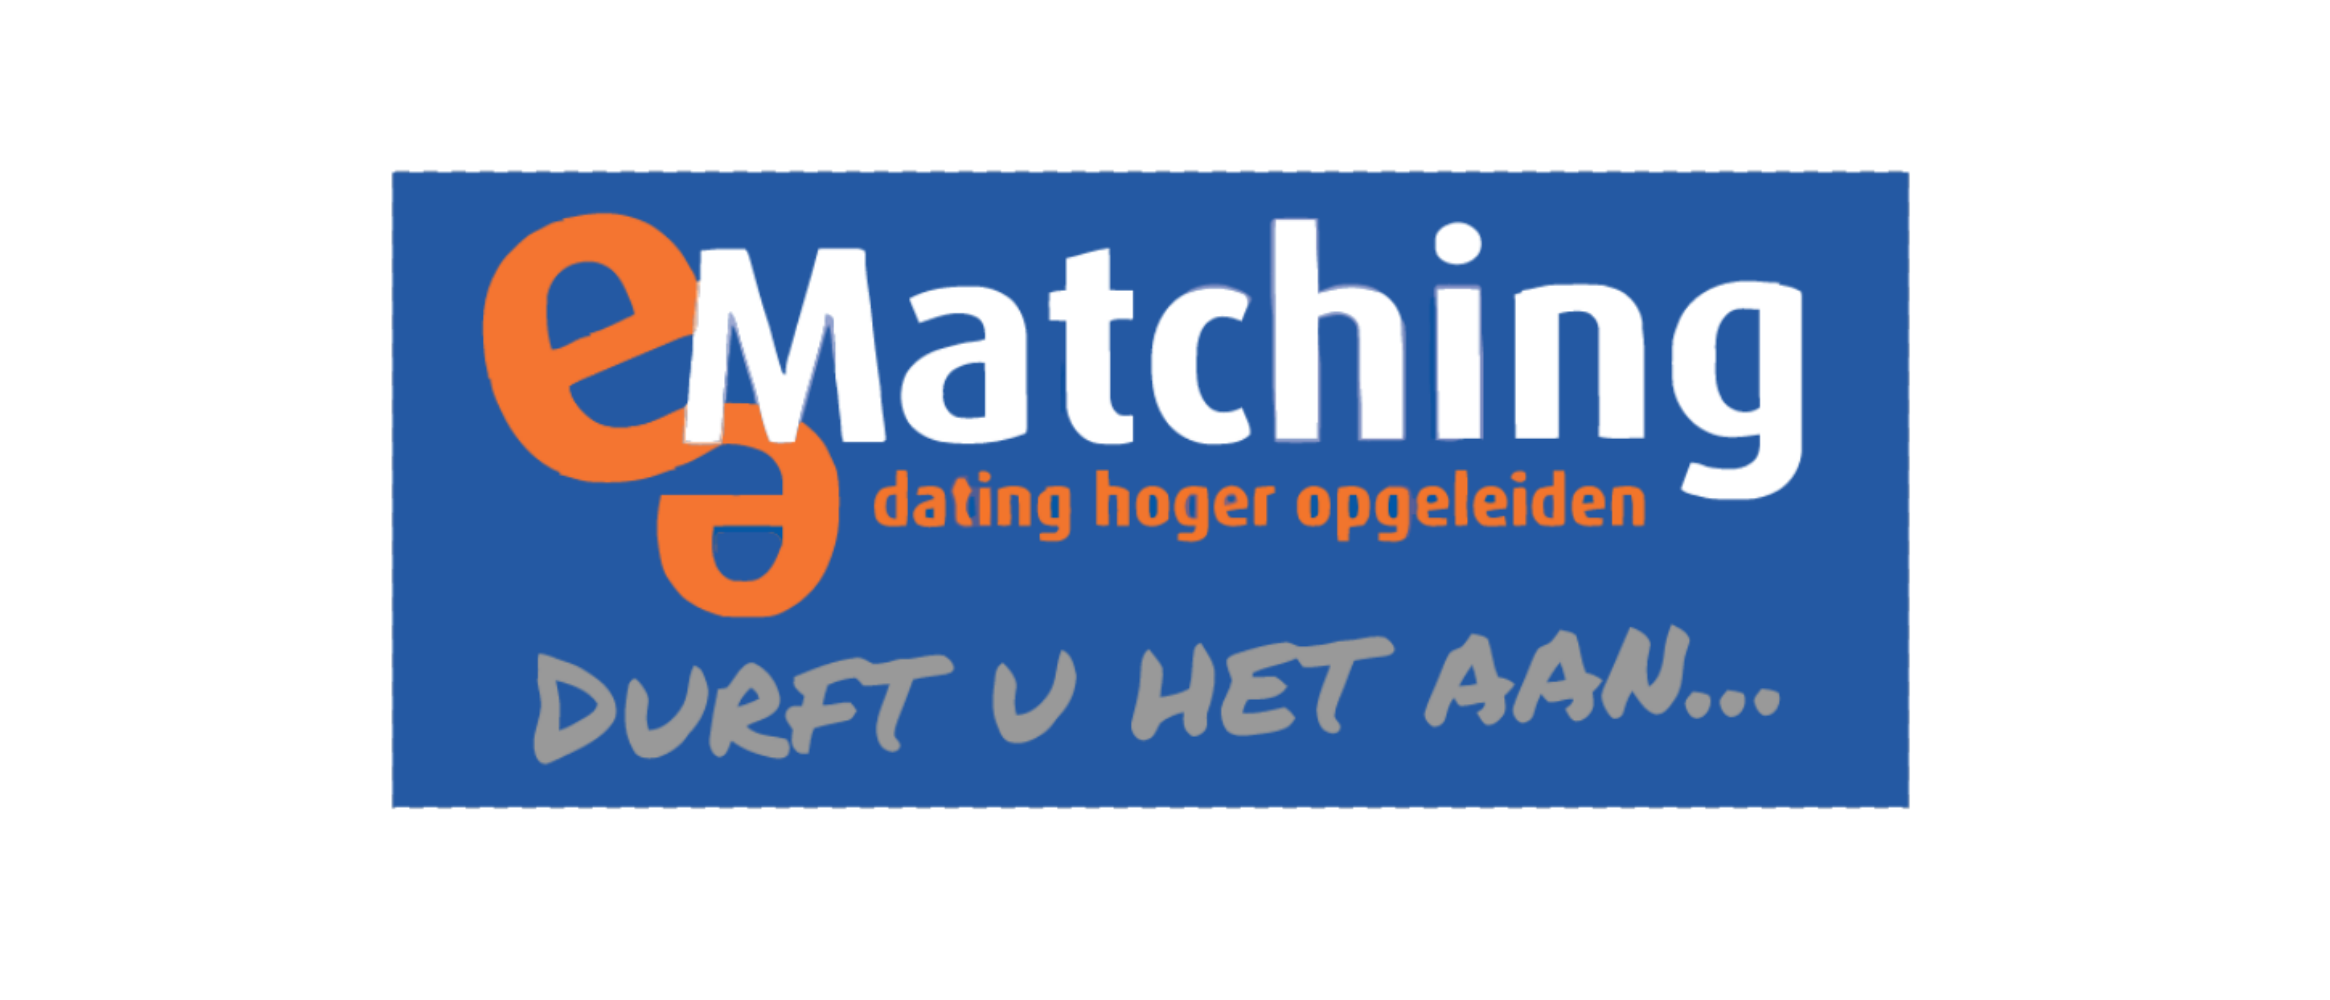 e-Matching.nl